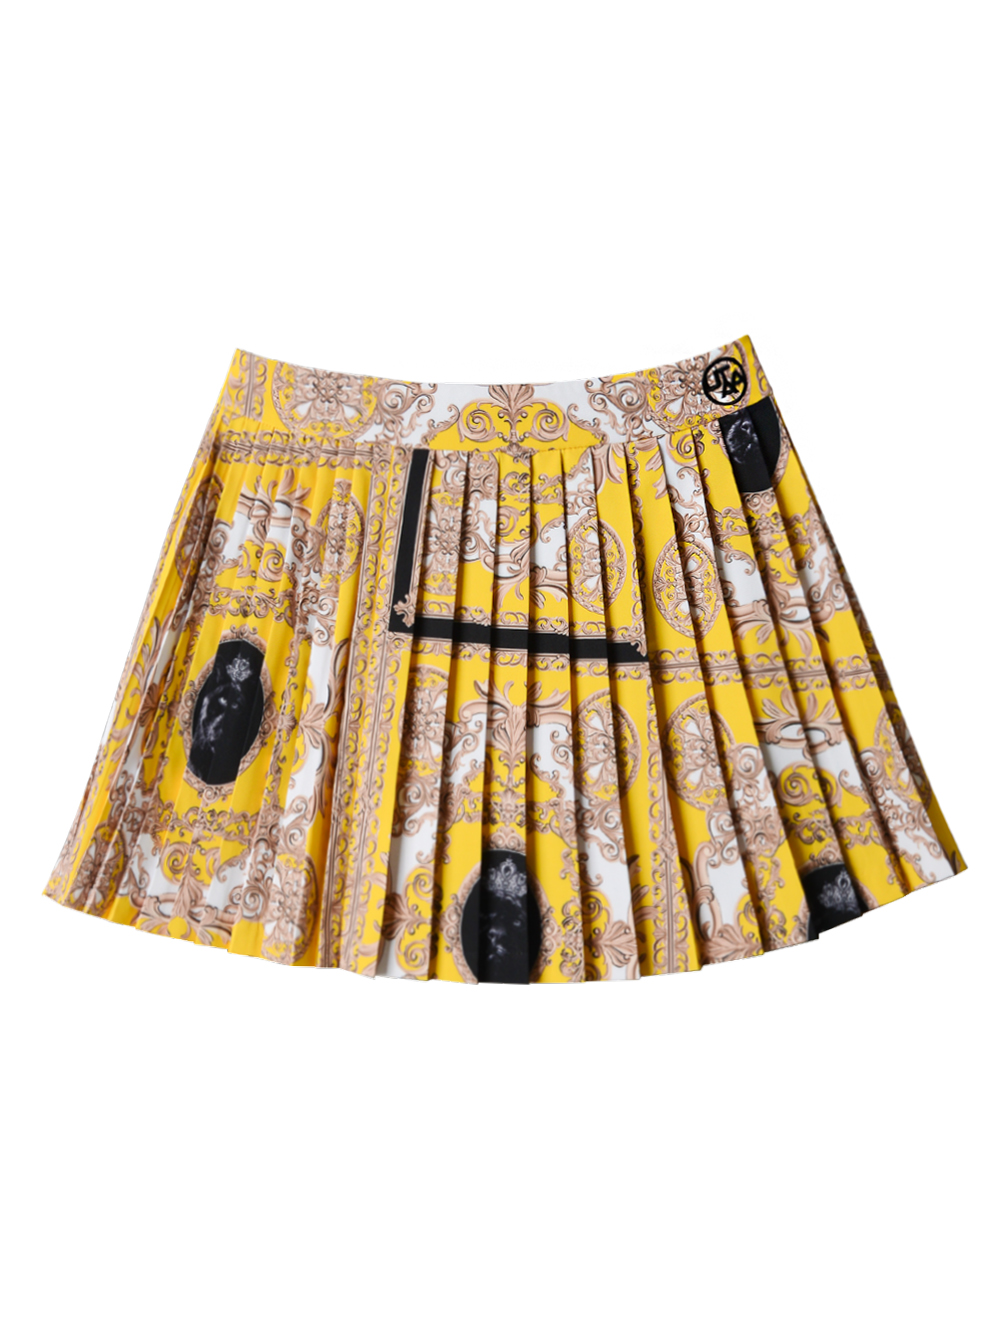 UTAA Canyon Buckingham Skirt : Yellow (UC3SKF592YE)